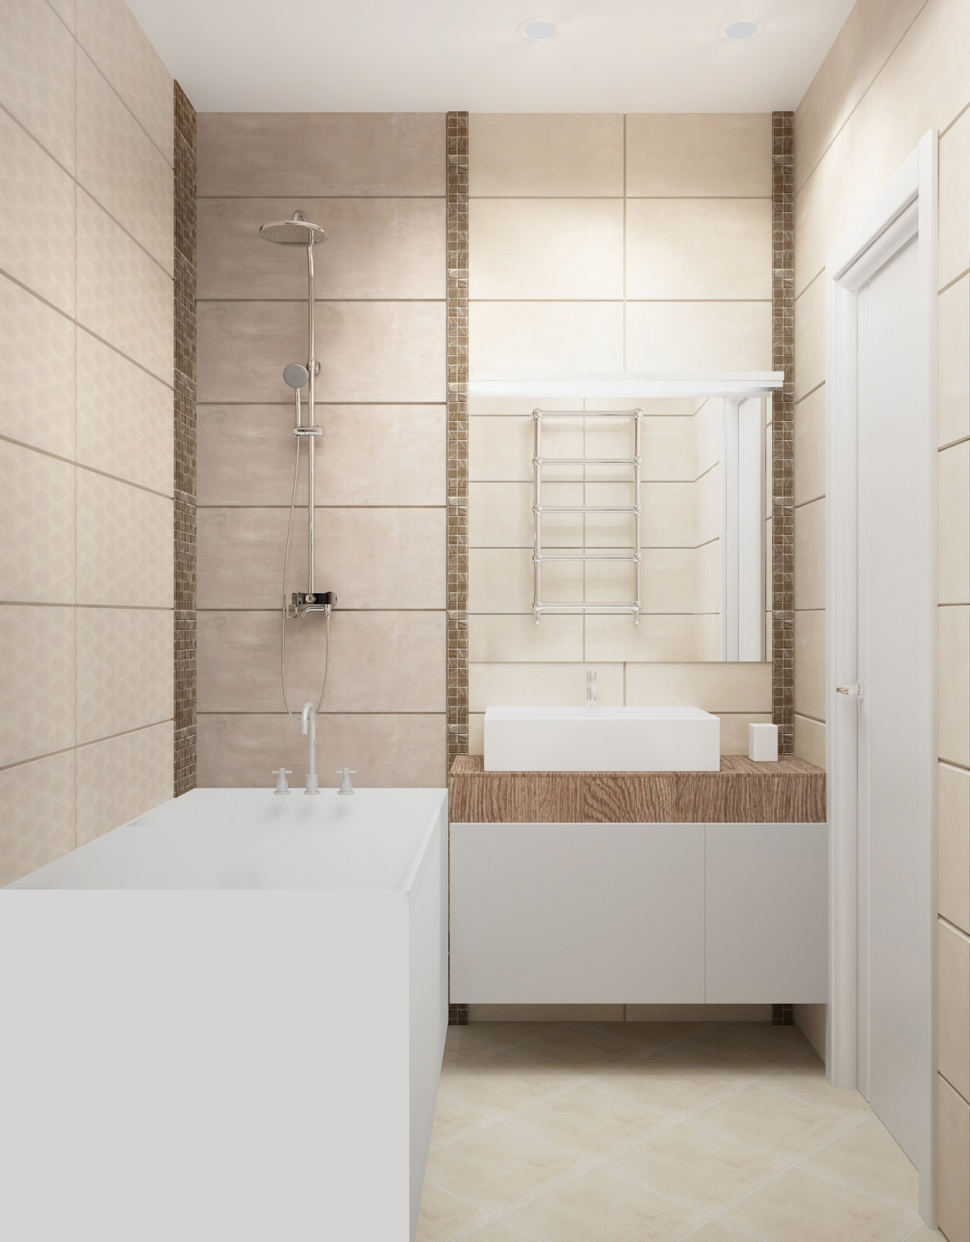 Дизайн-проект ванной комнаты в белых тонах 3 кв.м, ванна, душ, белая подвесная тумба, раковина, зеркало, плитка